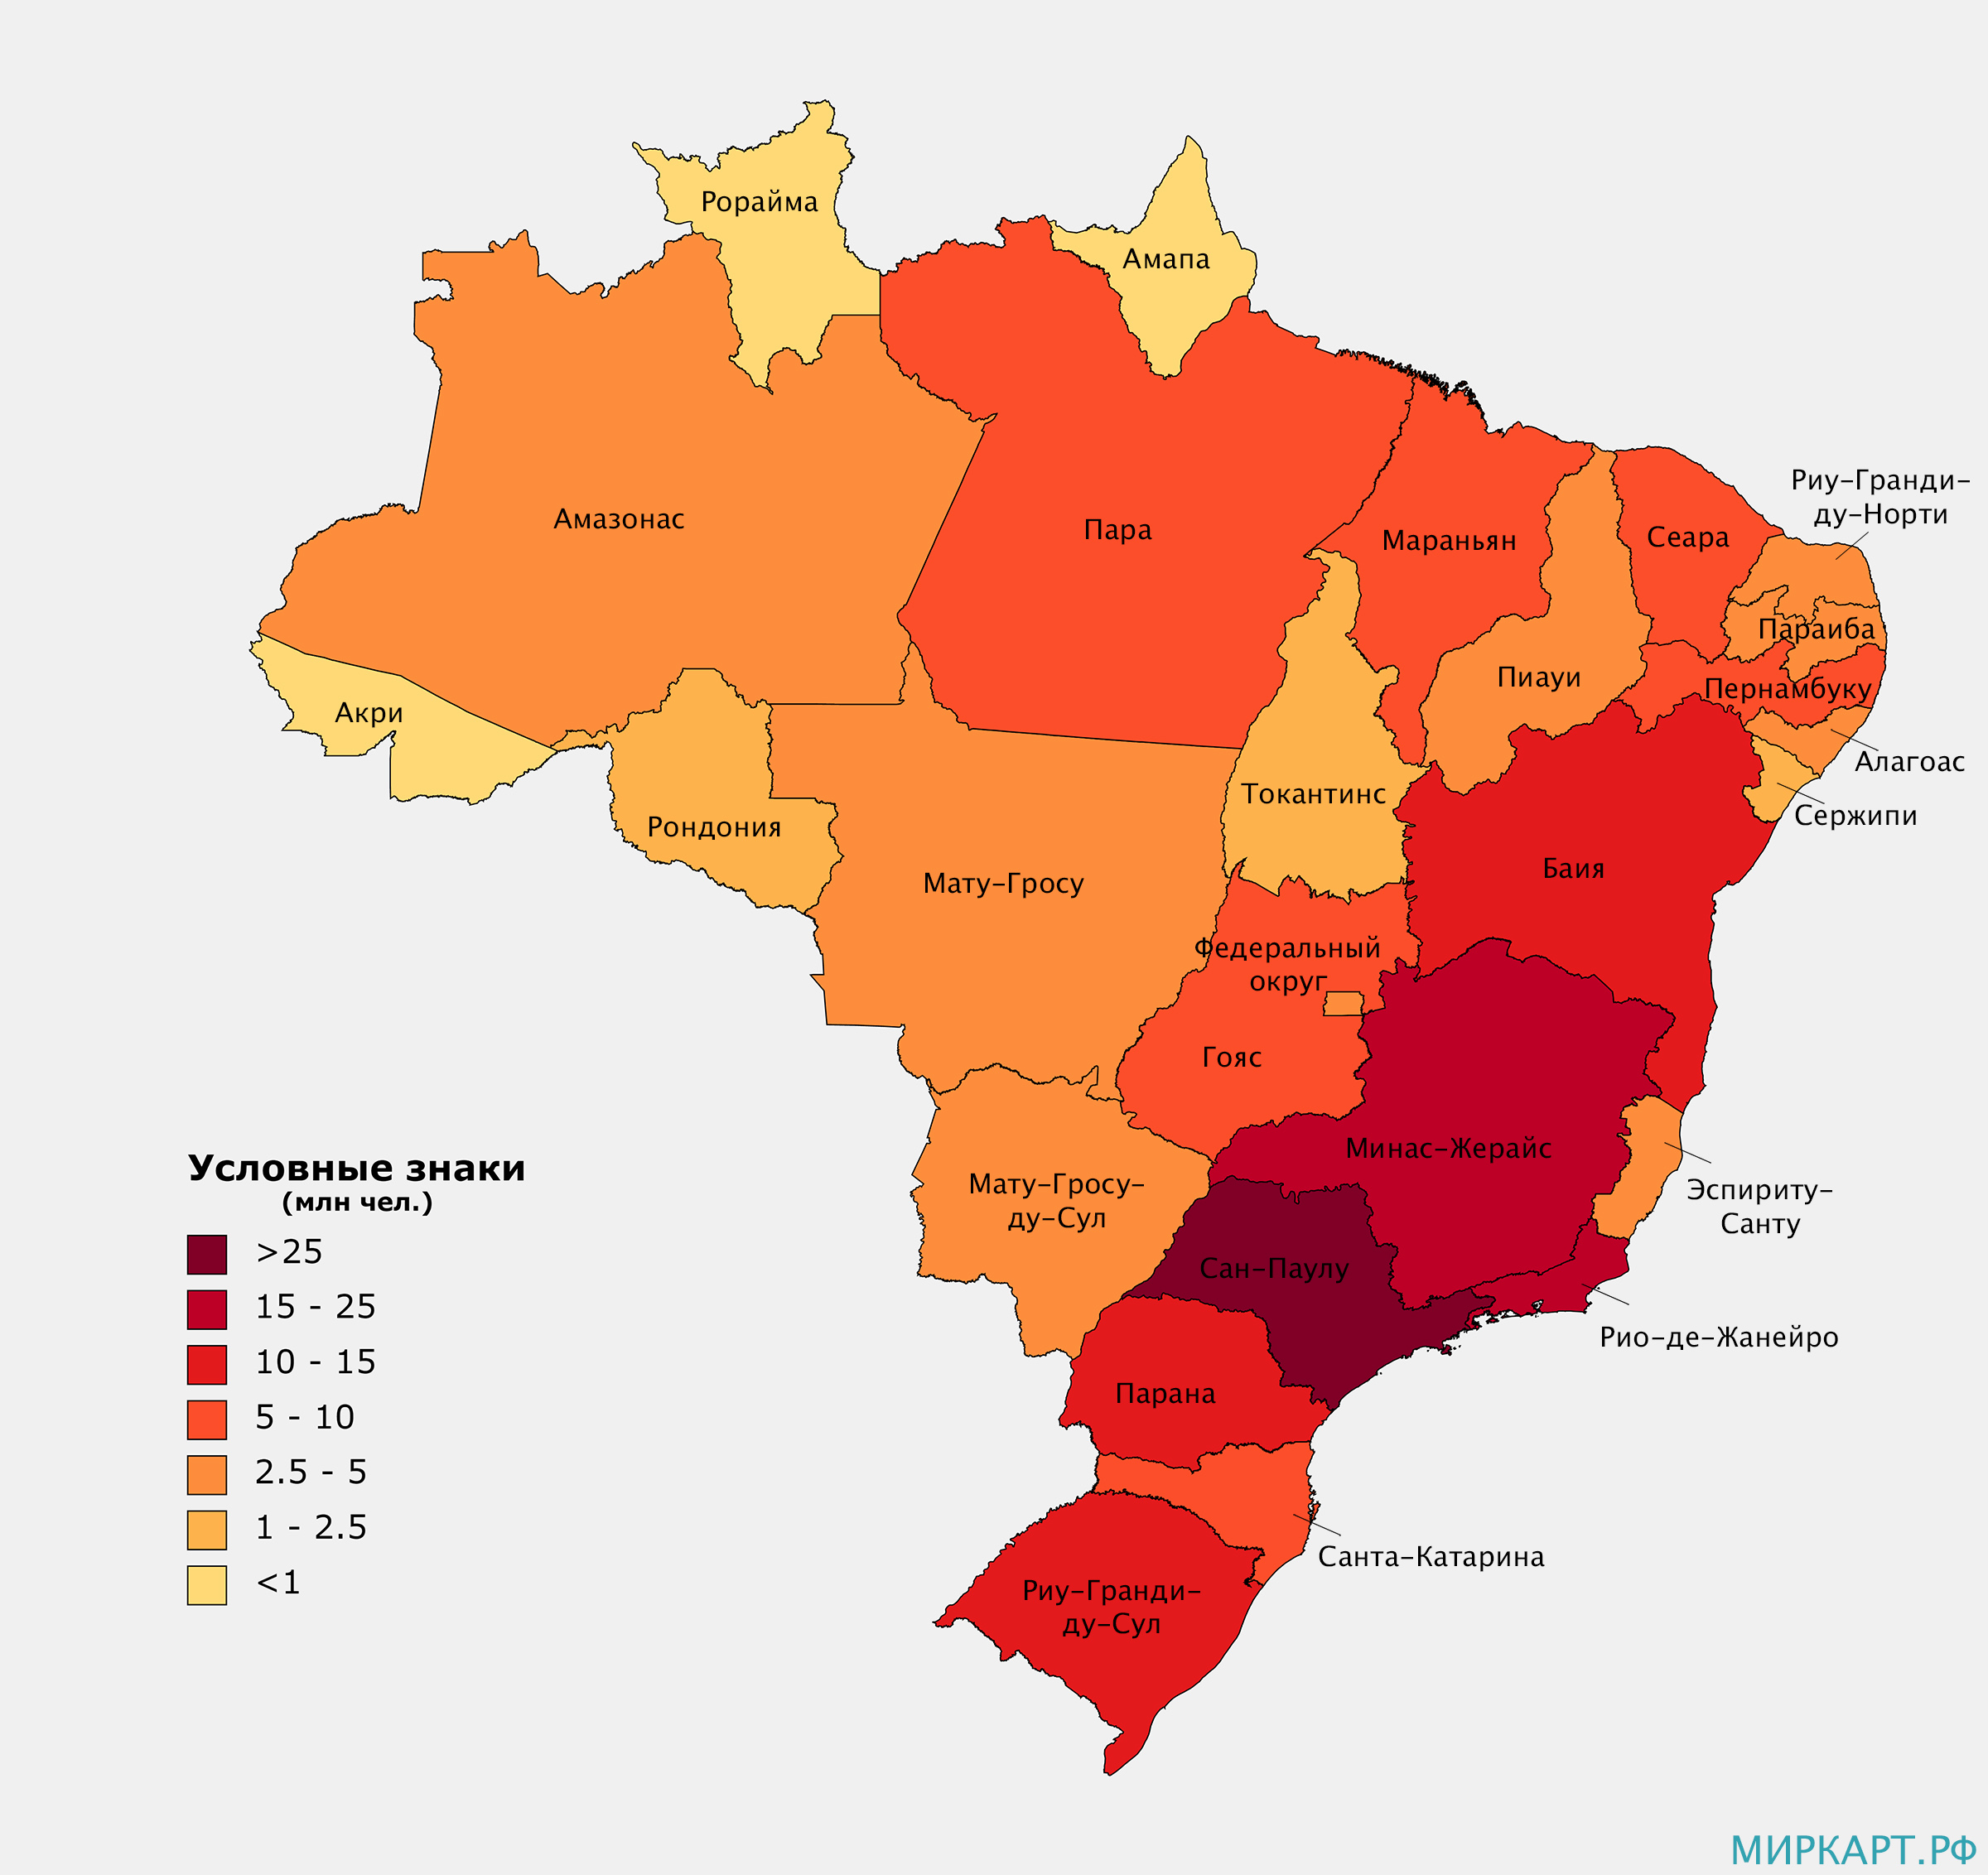 Назовите основную черту в размещении бразилии. Плотность населения Бразилии карта. Карта населения Бразилии. Плотность населения Бразилии. Численность населения Бразилии на 2021.